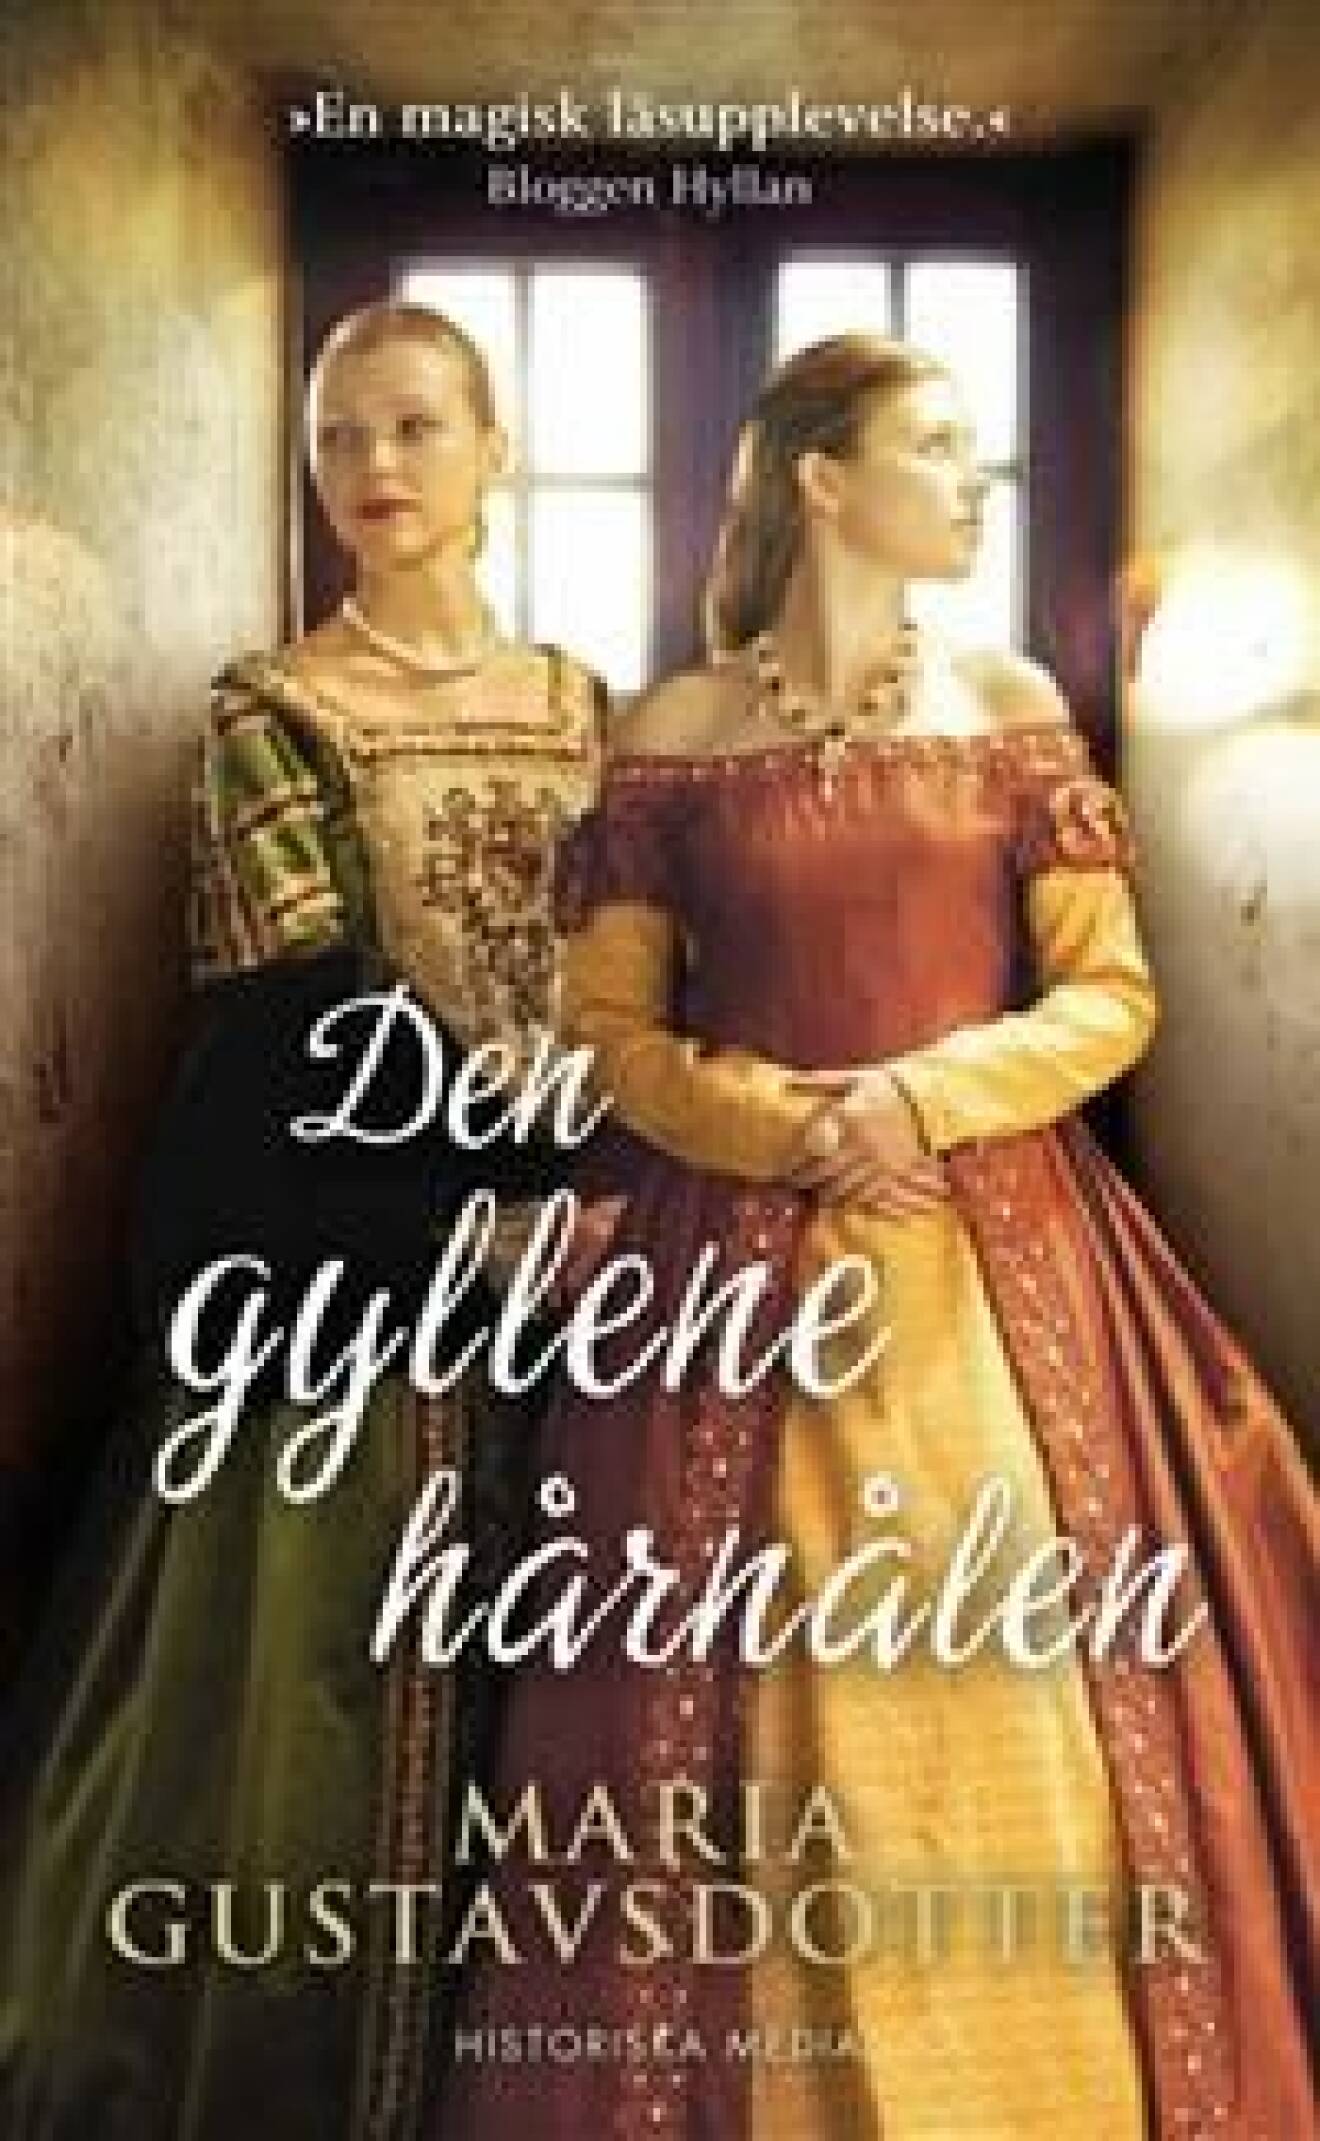 En bild på bokomslaget till romanen Den gyllene hårnålen (Maria Gustavsdotter).